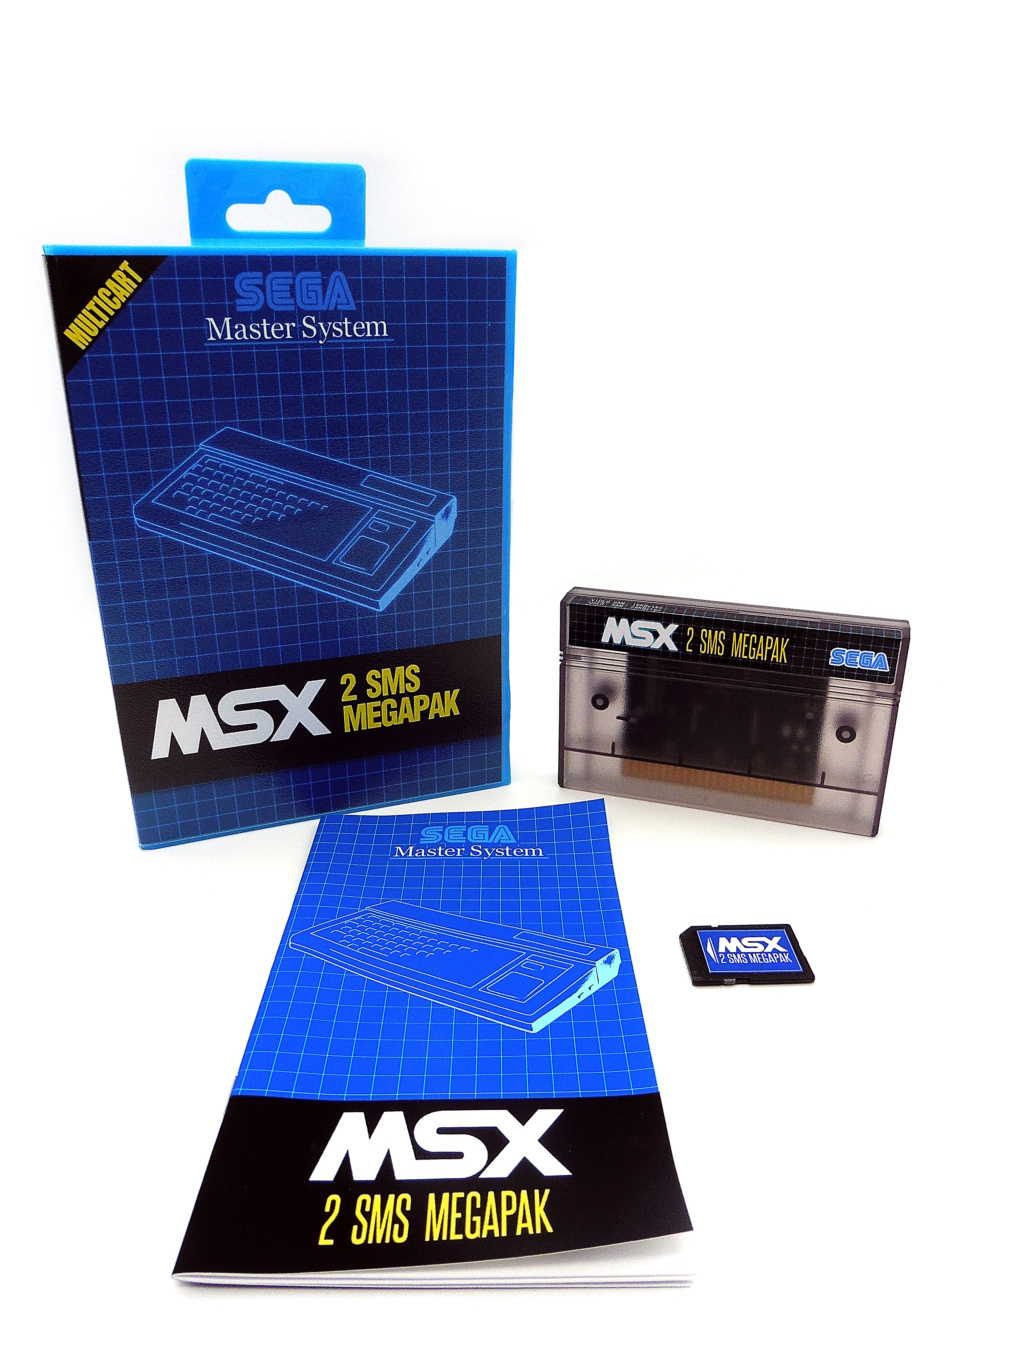 Msx 2 Sms Megapak Cartmo65